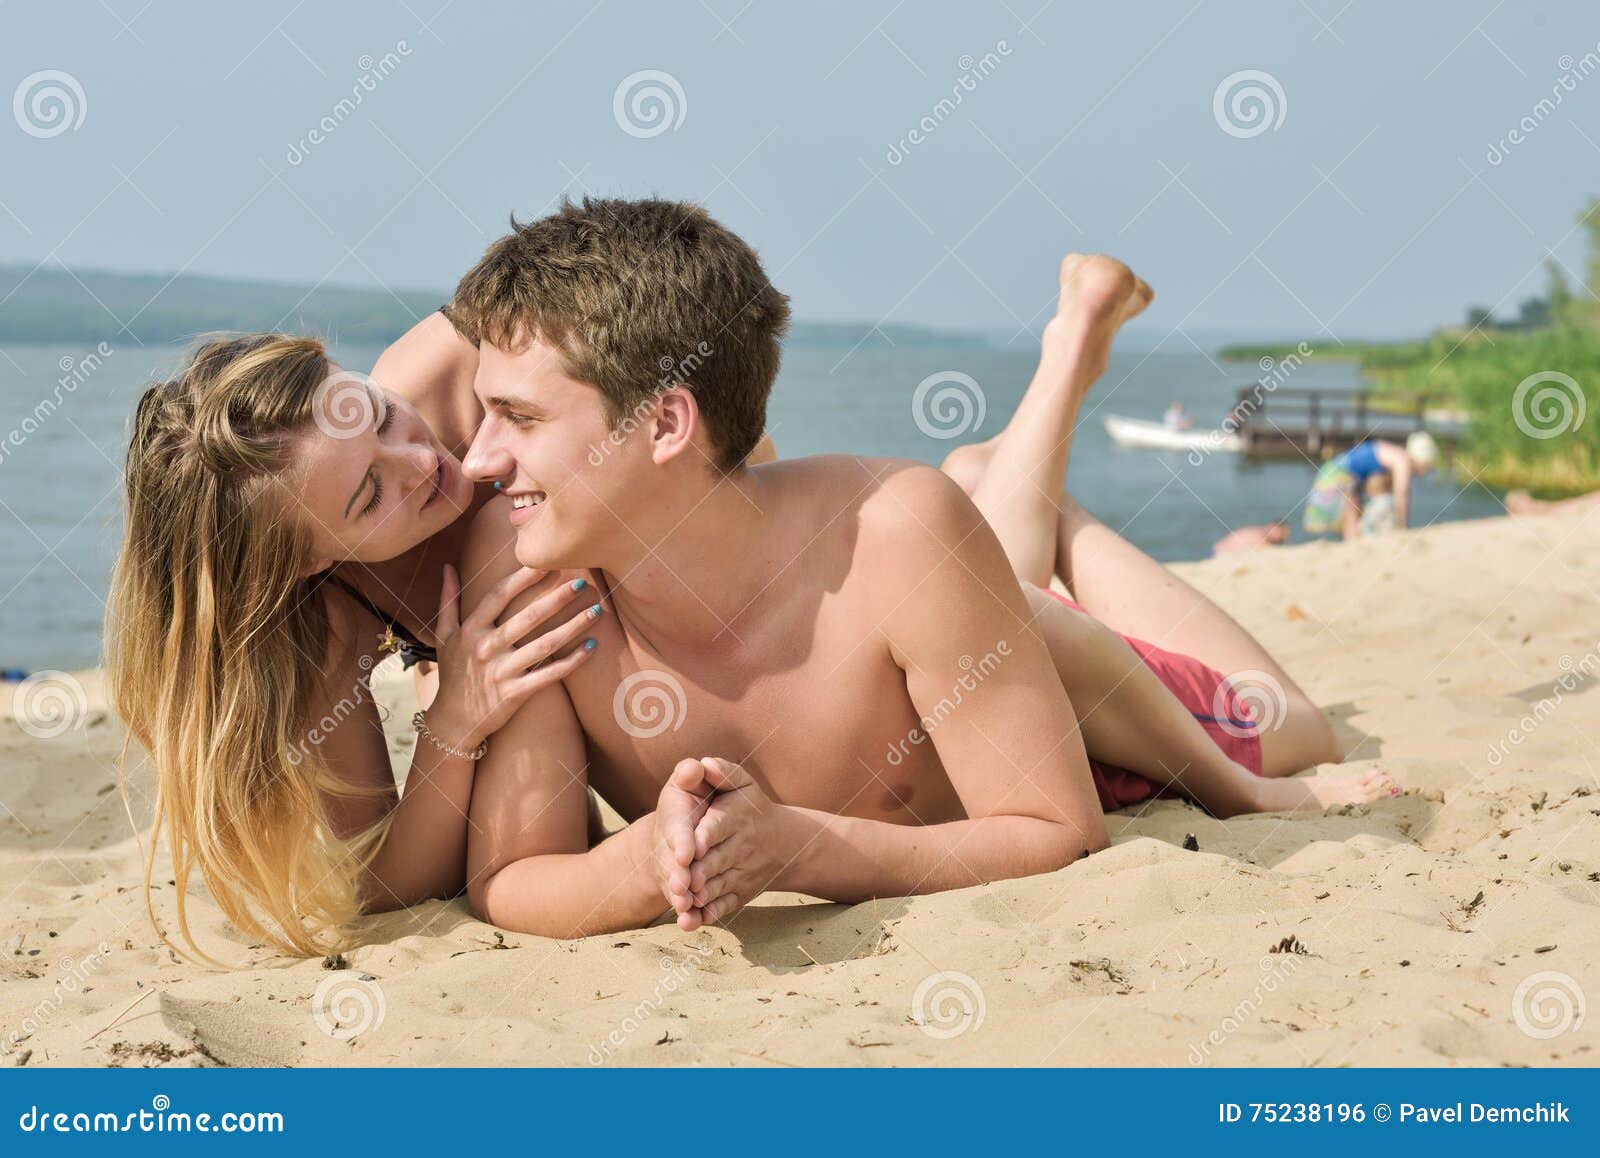 мужчины и женщины на голом пляже фото 107